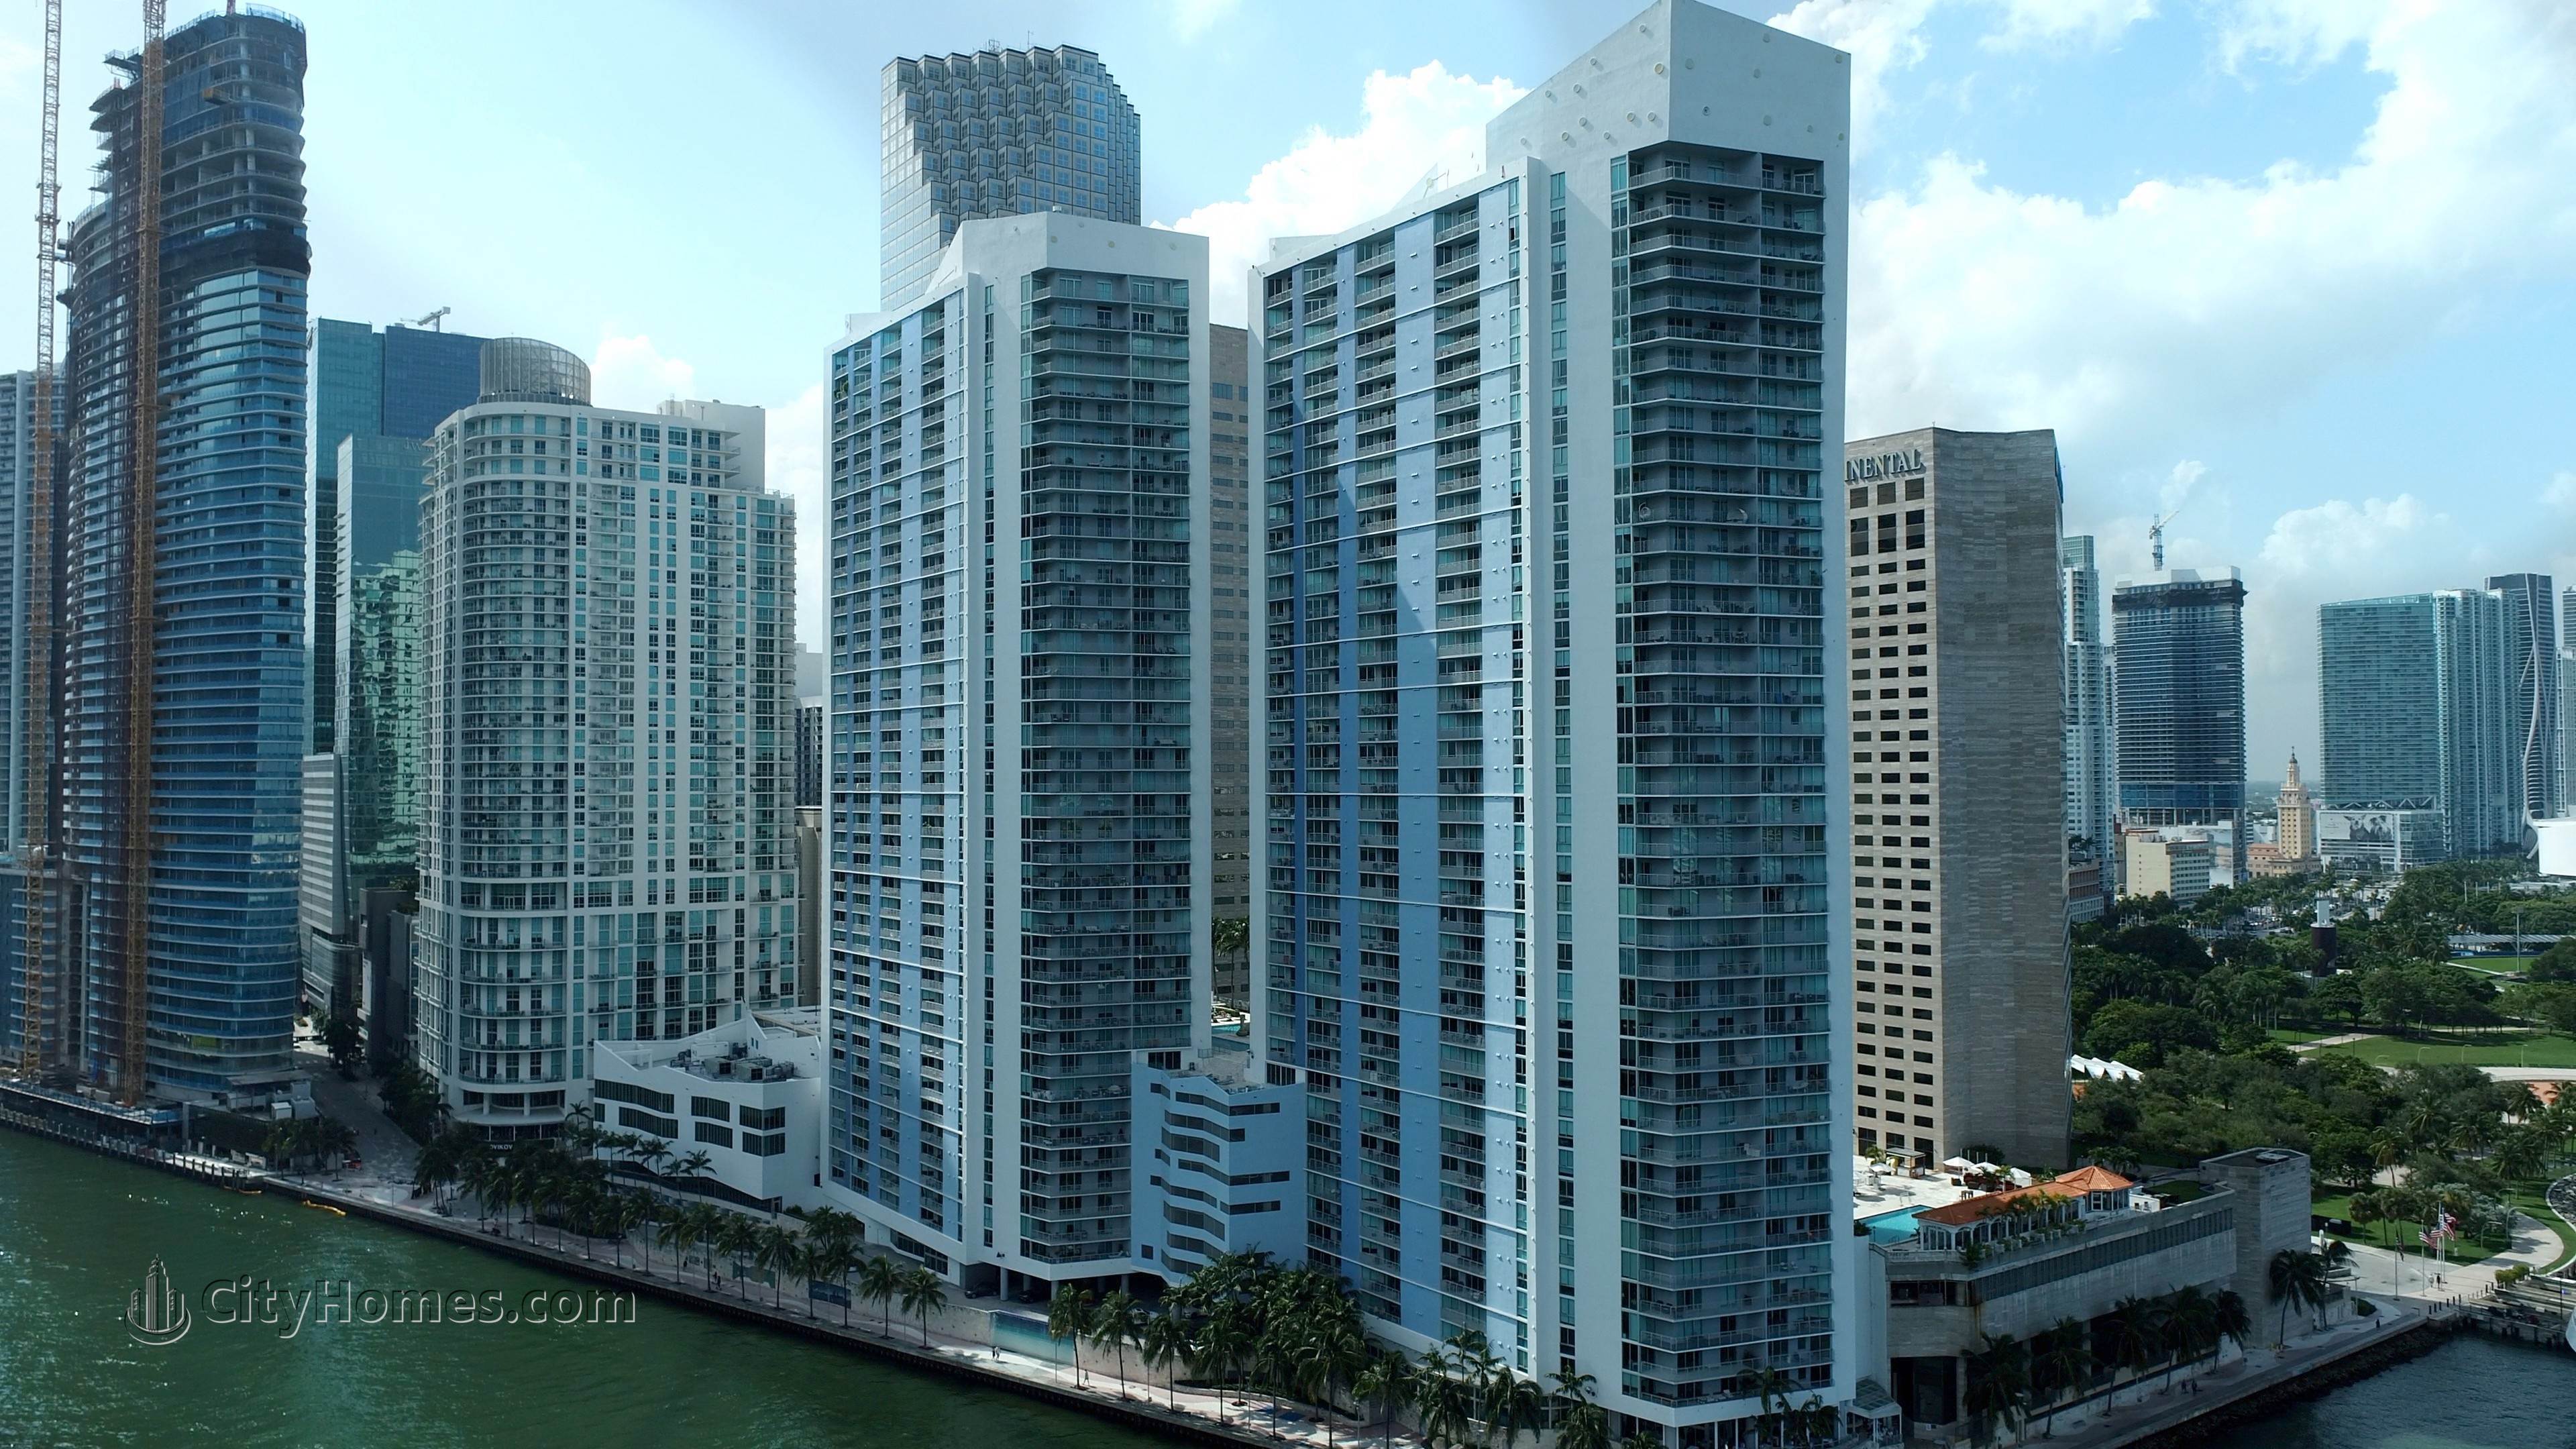 2. One Miami Gebäude bei 325 And 335 S Biscayne Blvd, Miami, FL 33131